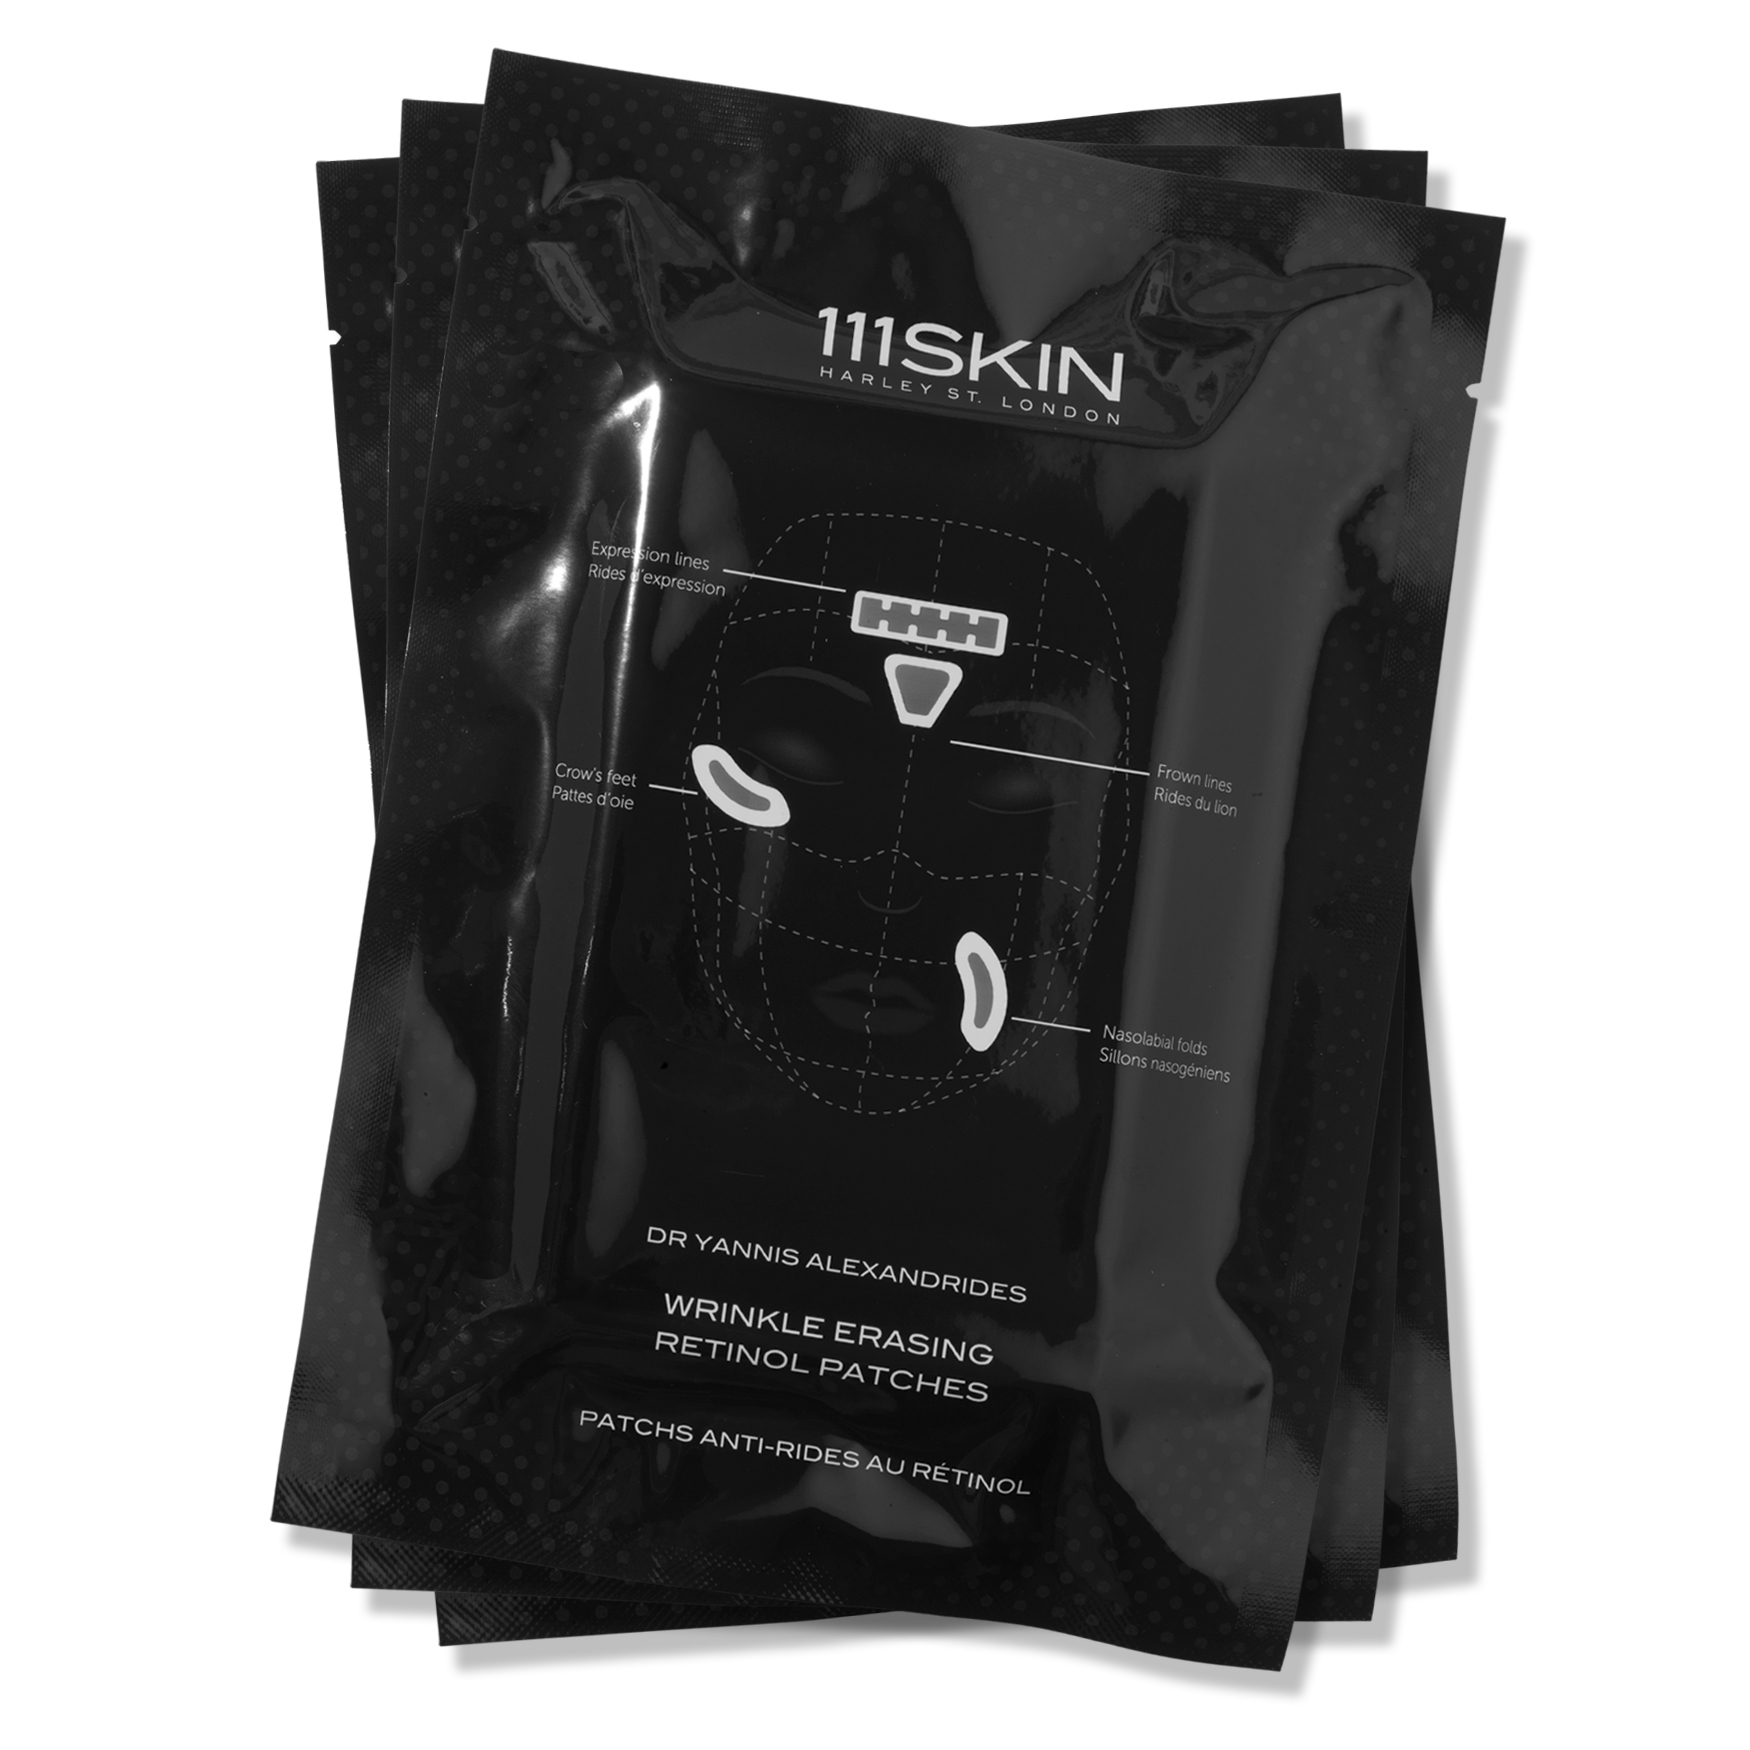 111SKIN Wrinkle Erasing Retinol Patches | Space NK